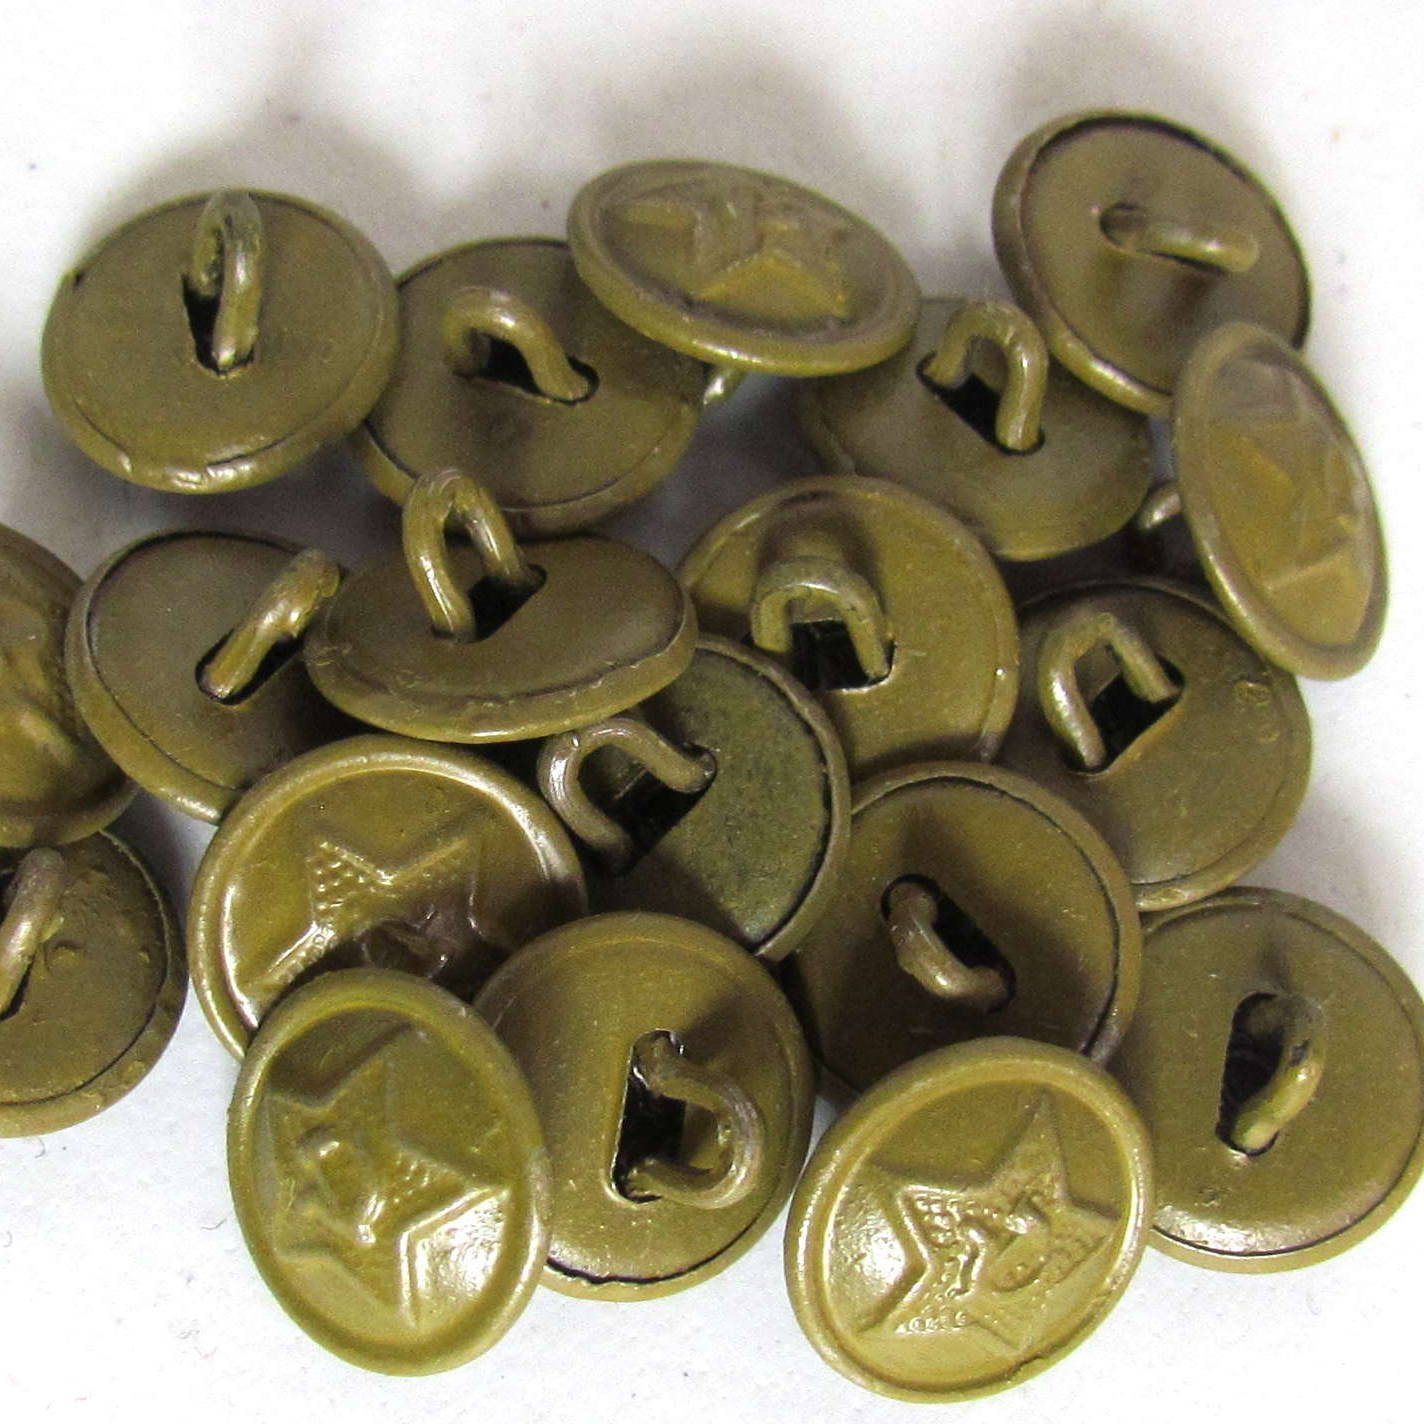 Russian ww2 brass buttons. Soviet shirt buttons